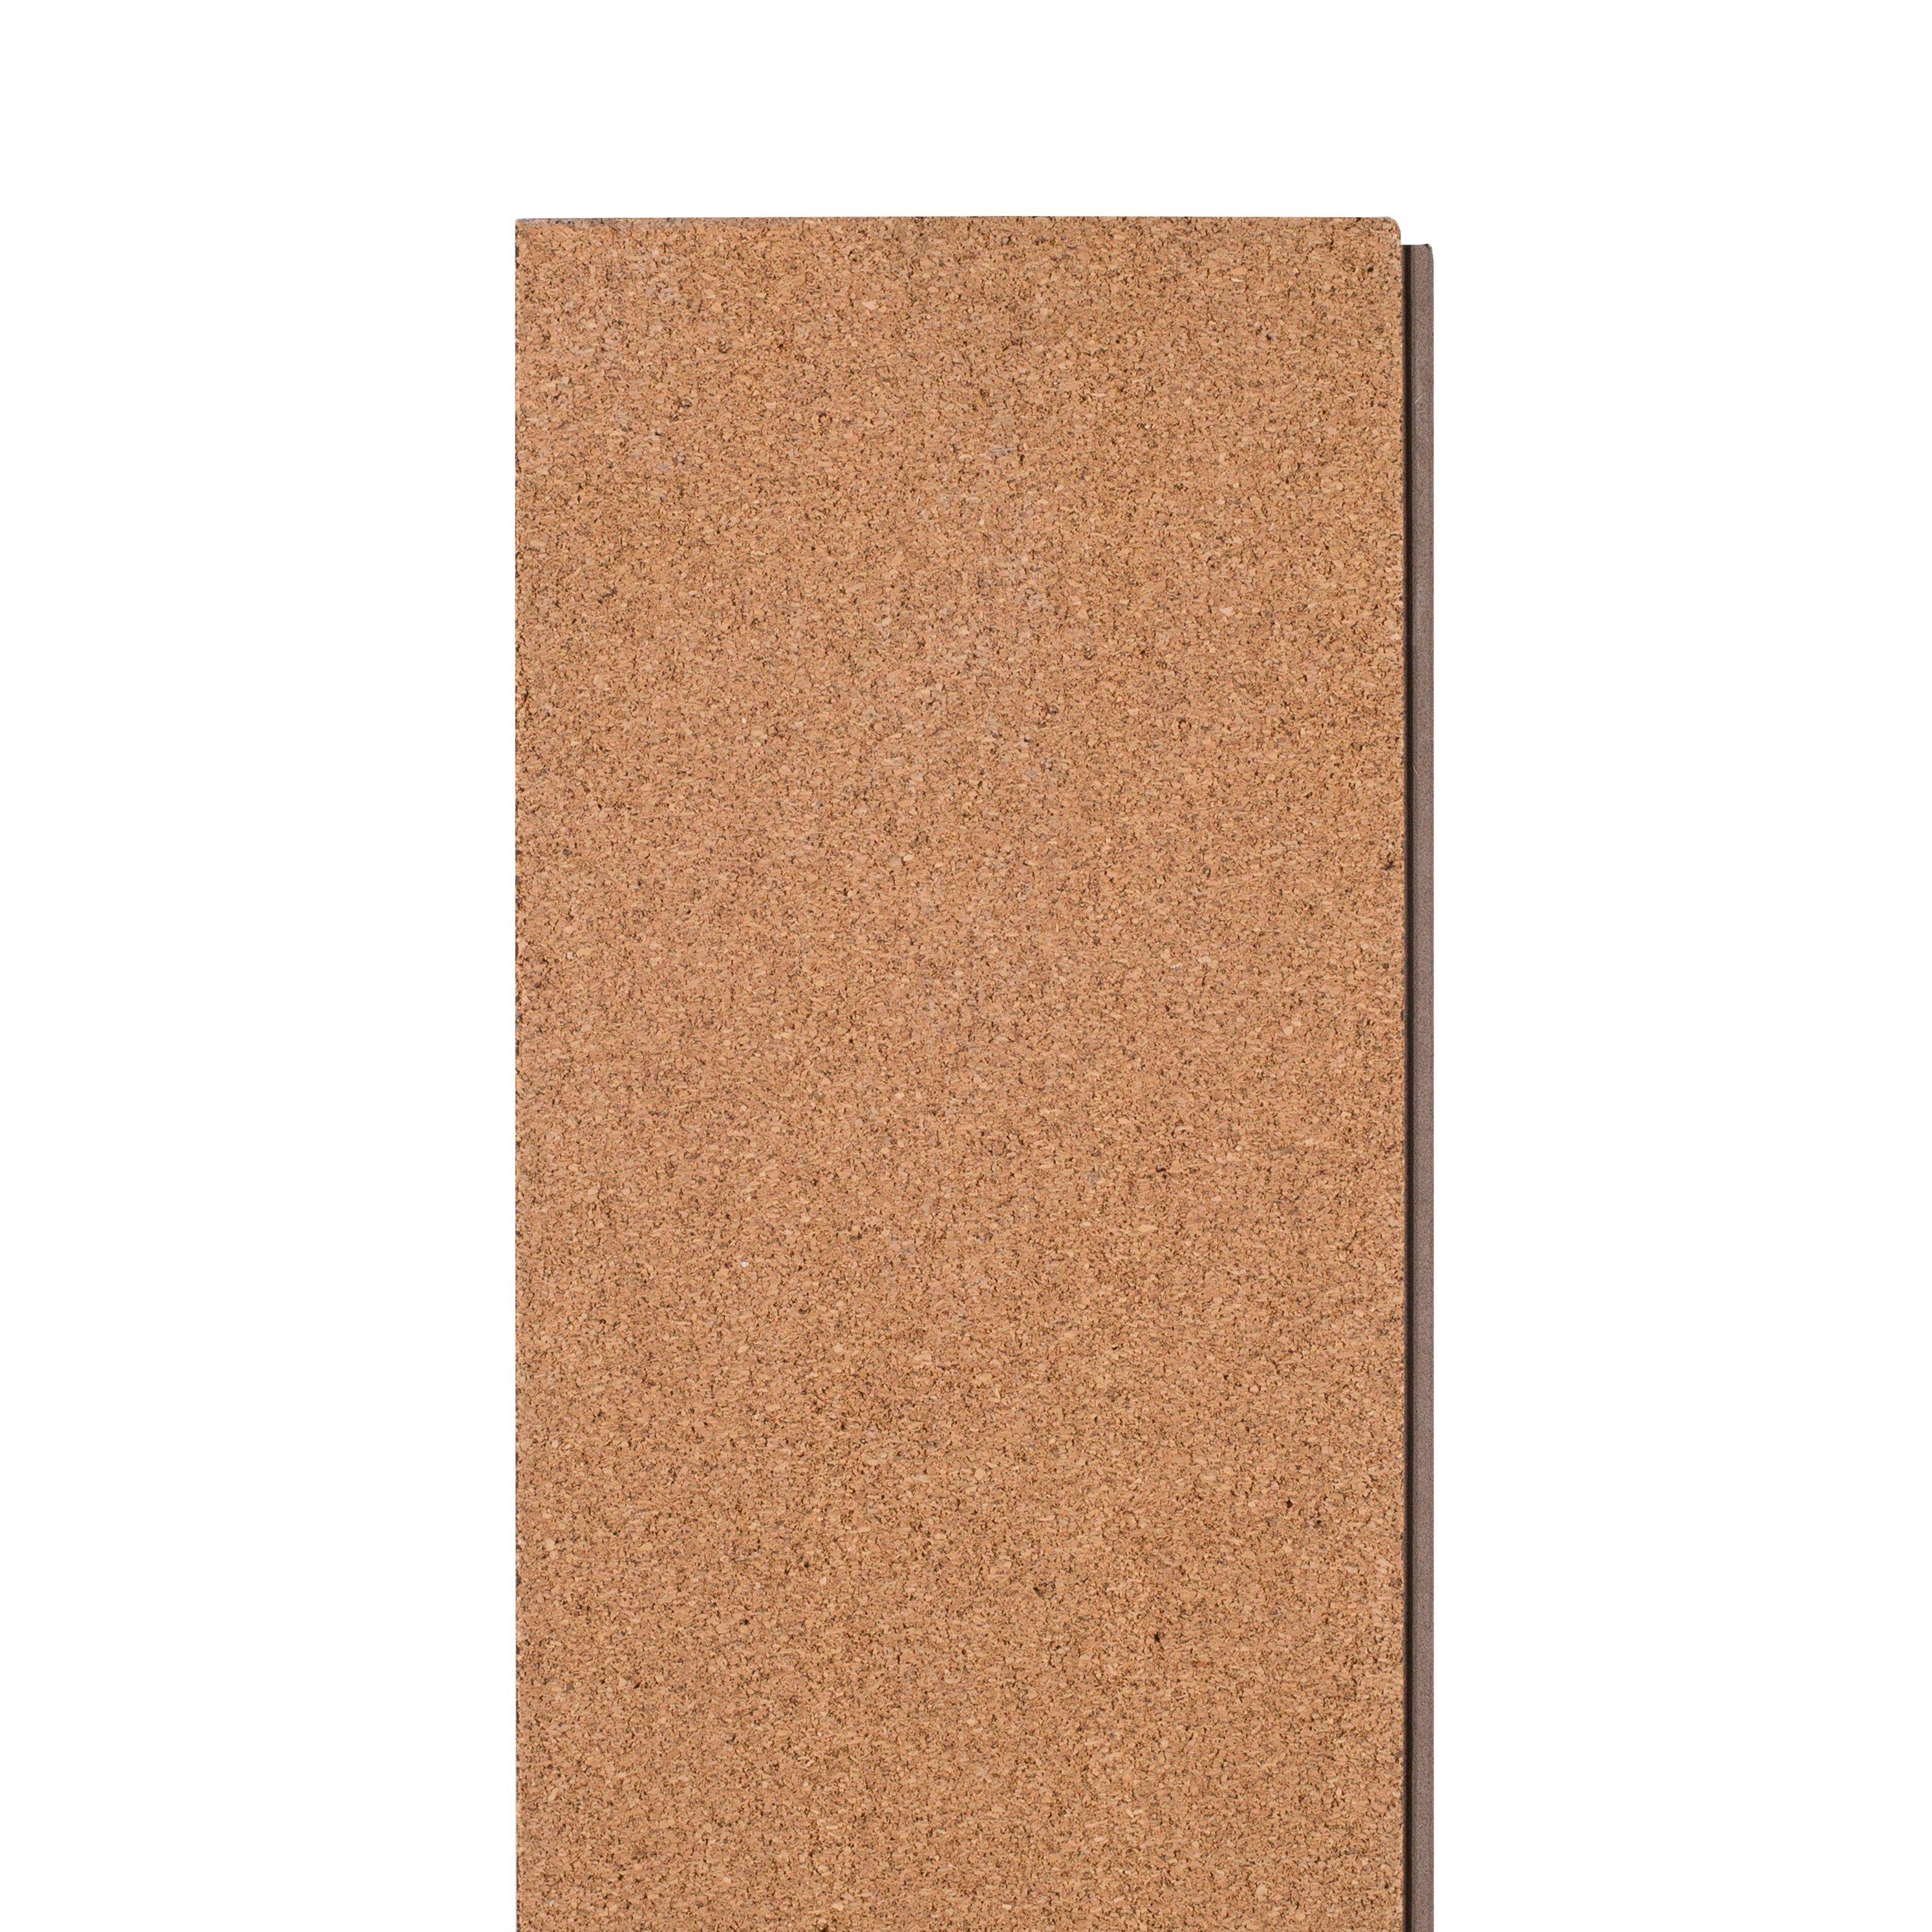 Ashen Oak Rigid Core Luxury Vinyl Plank - Cork Back